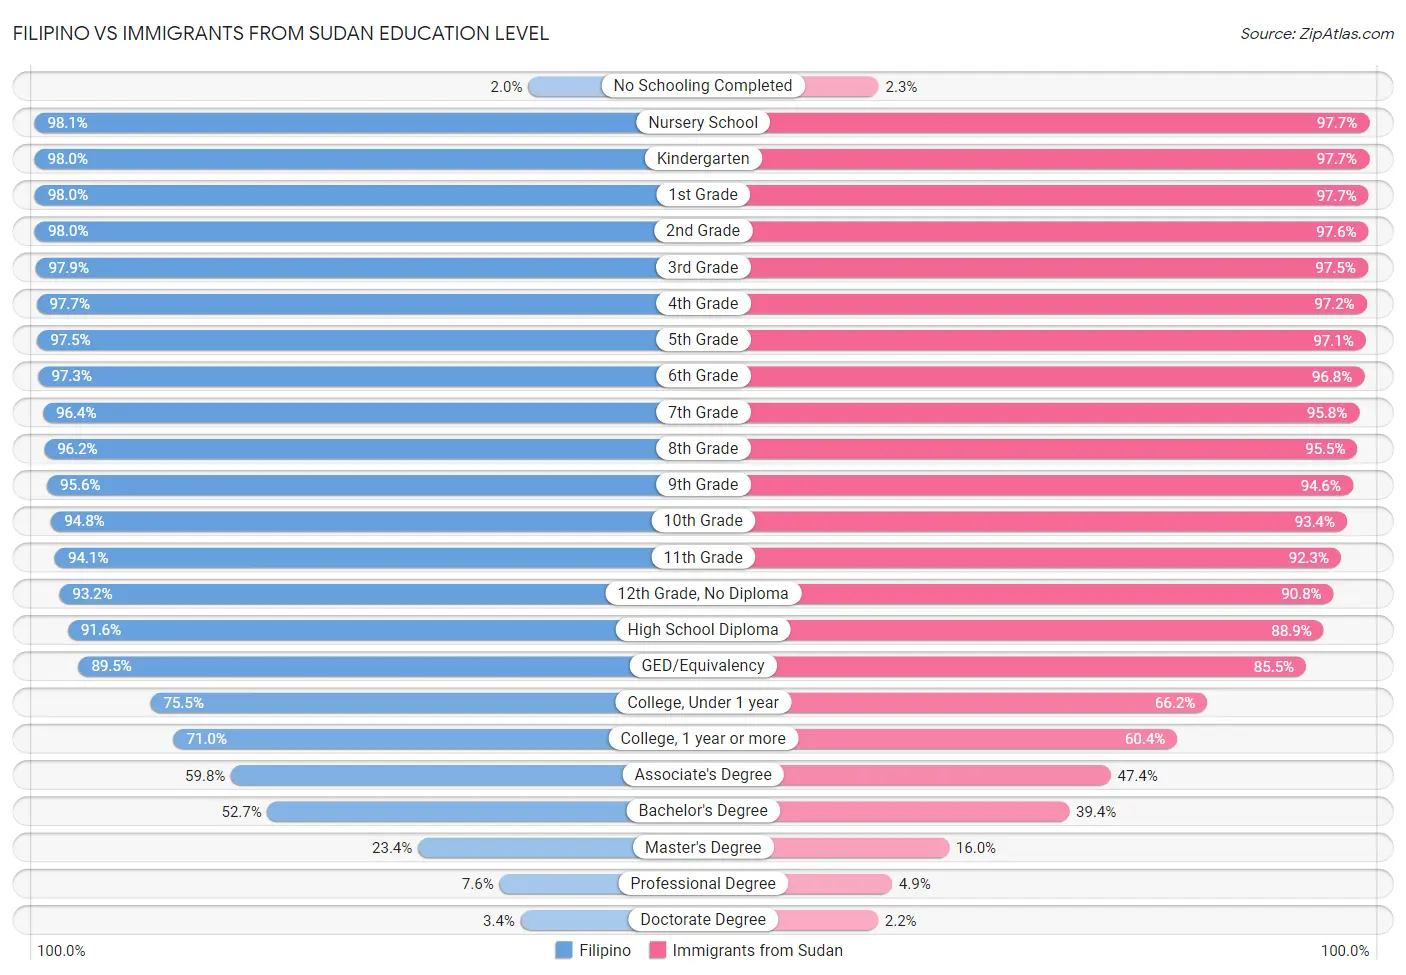 Filipino vs Immigrants from Sudan Education Level